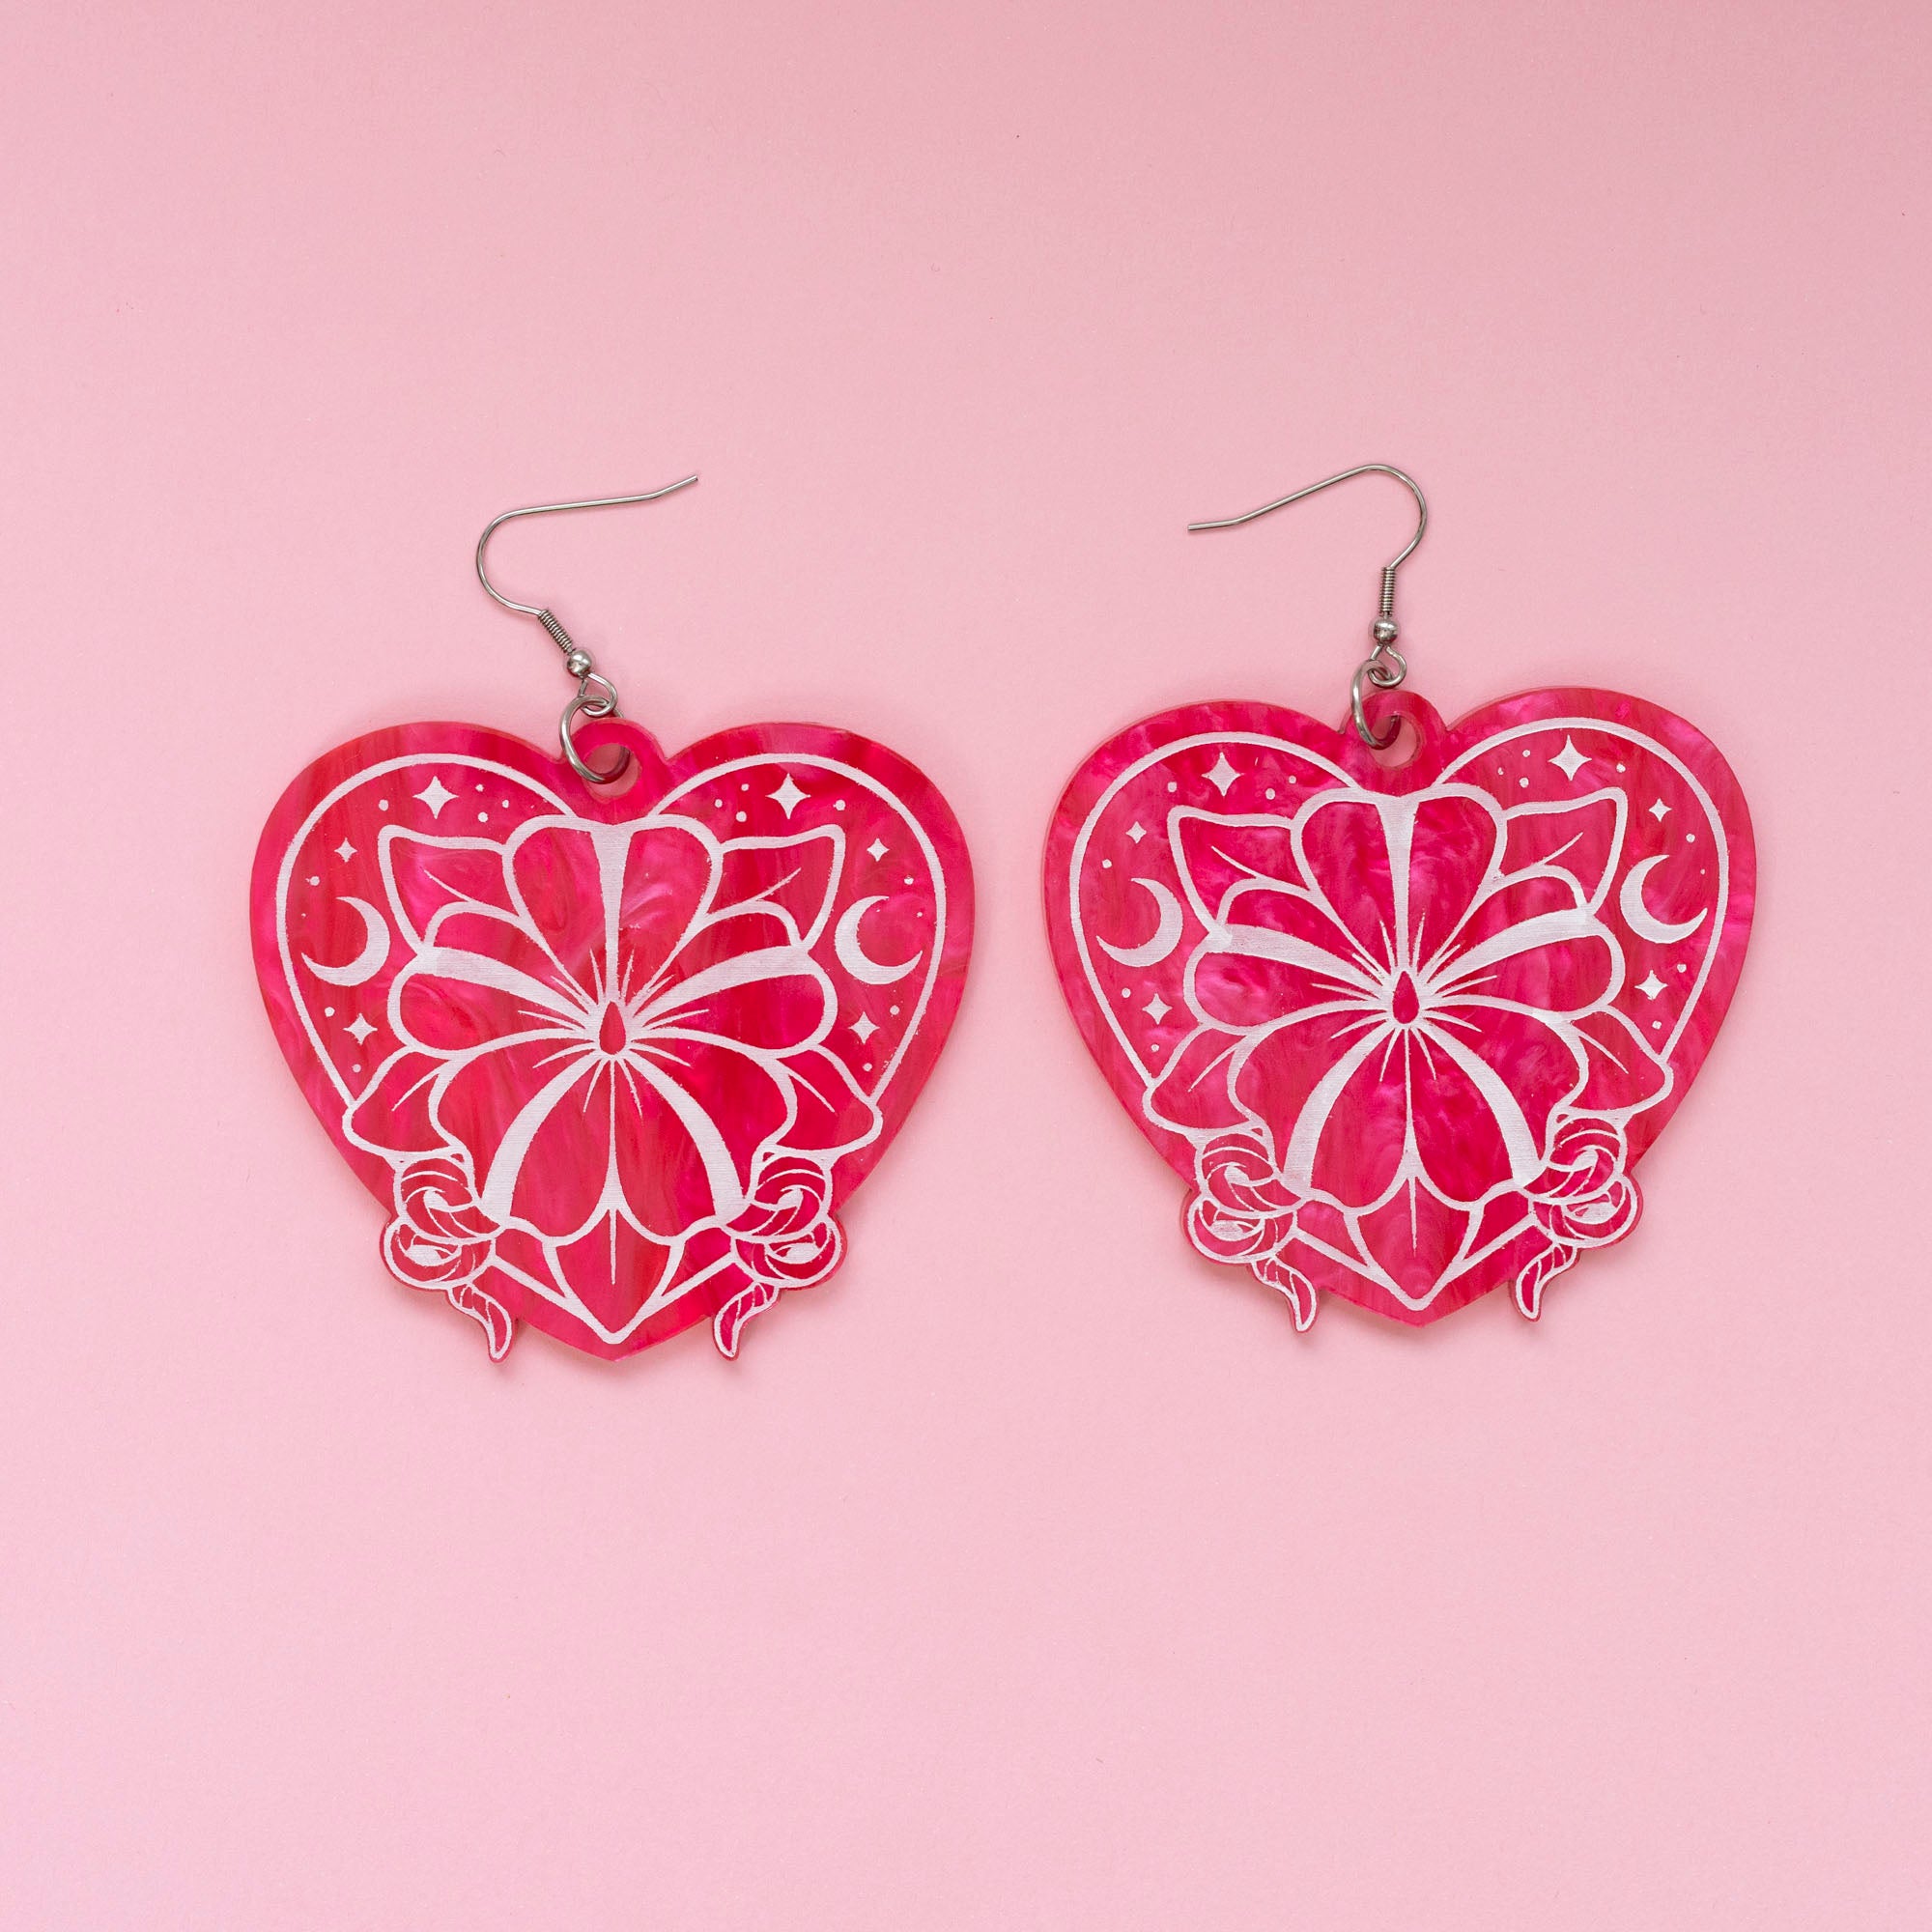 Wylde Flowers Moonflower Acrylic Earrings - Hot Pink